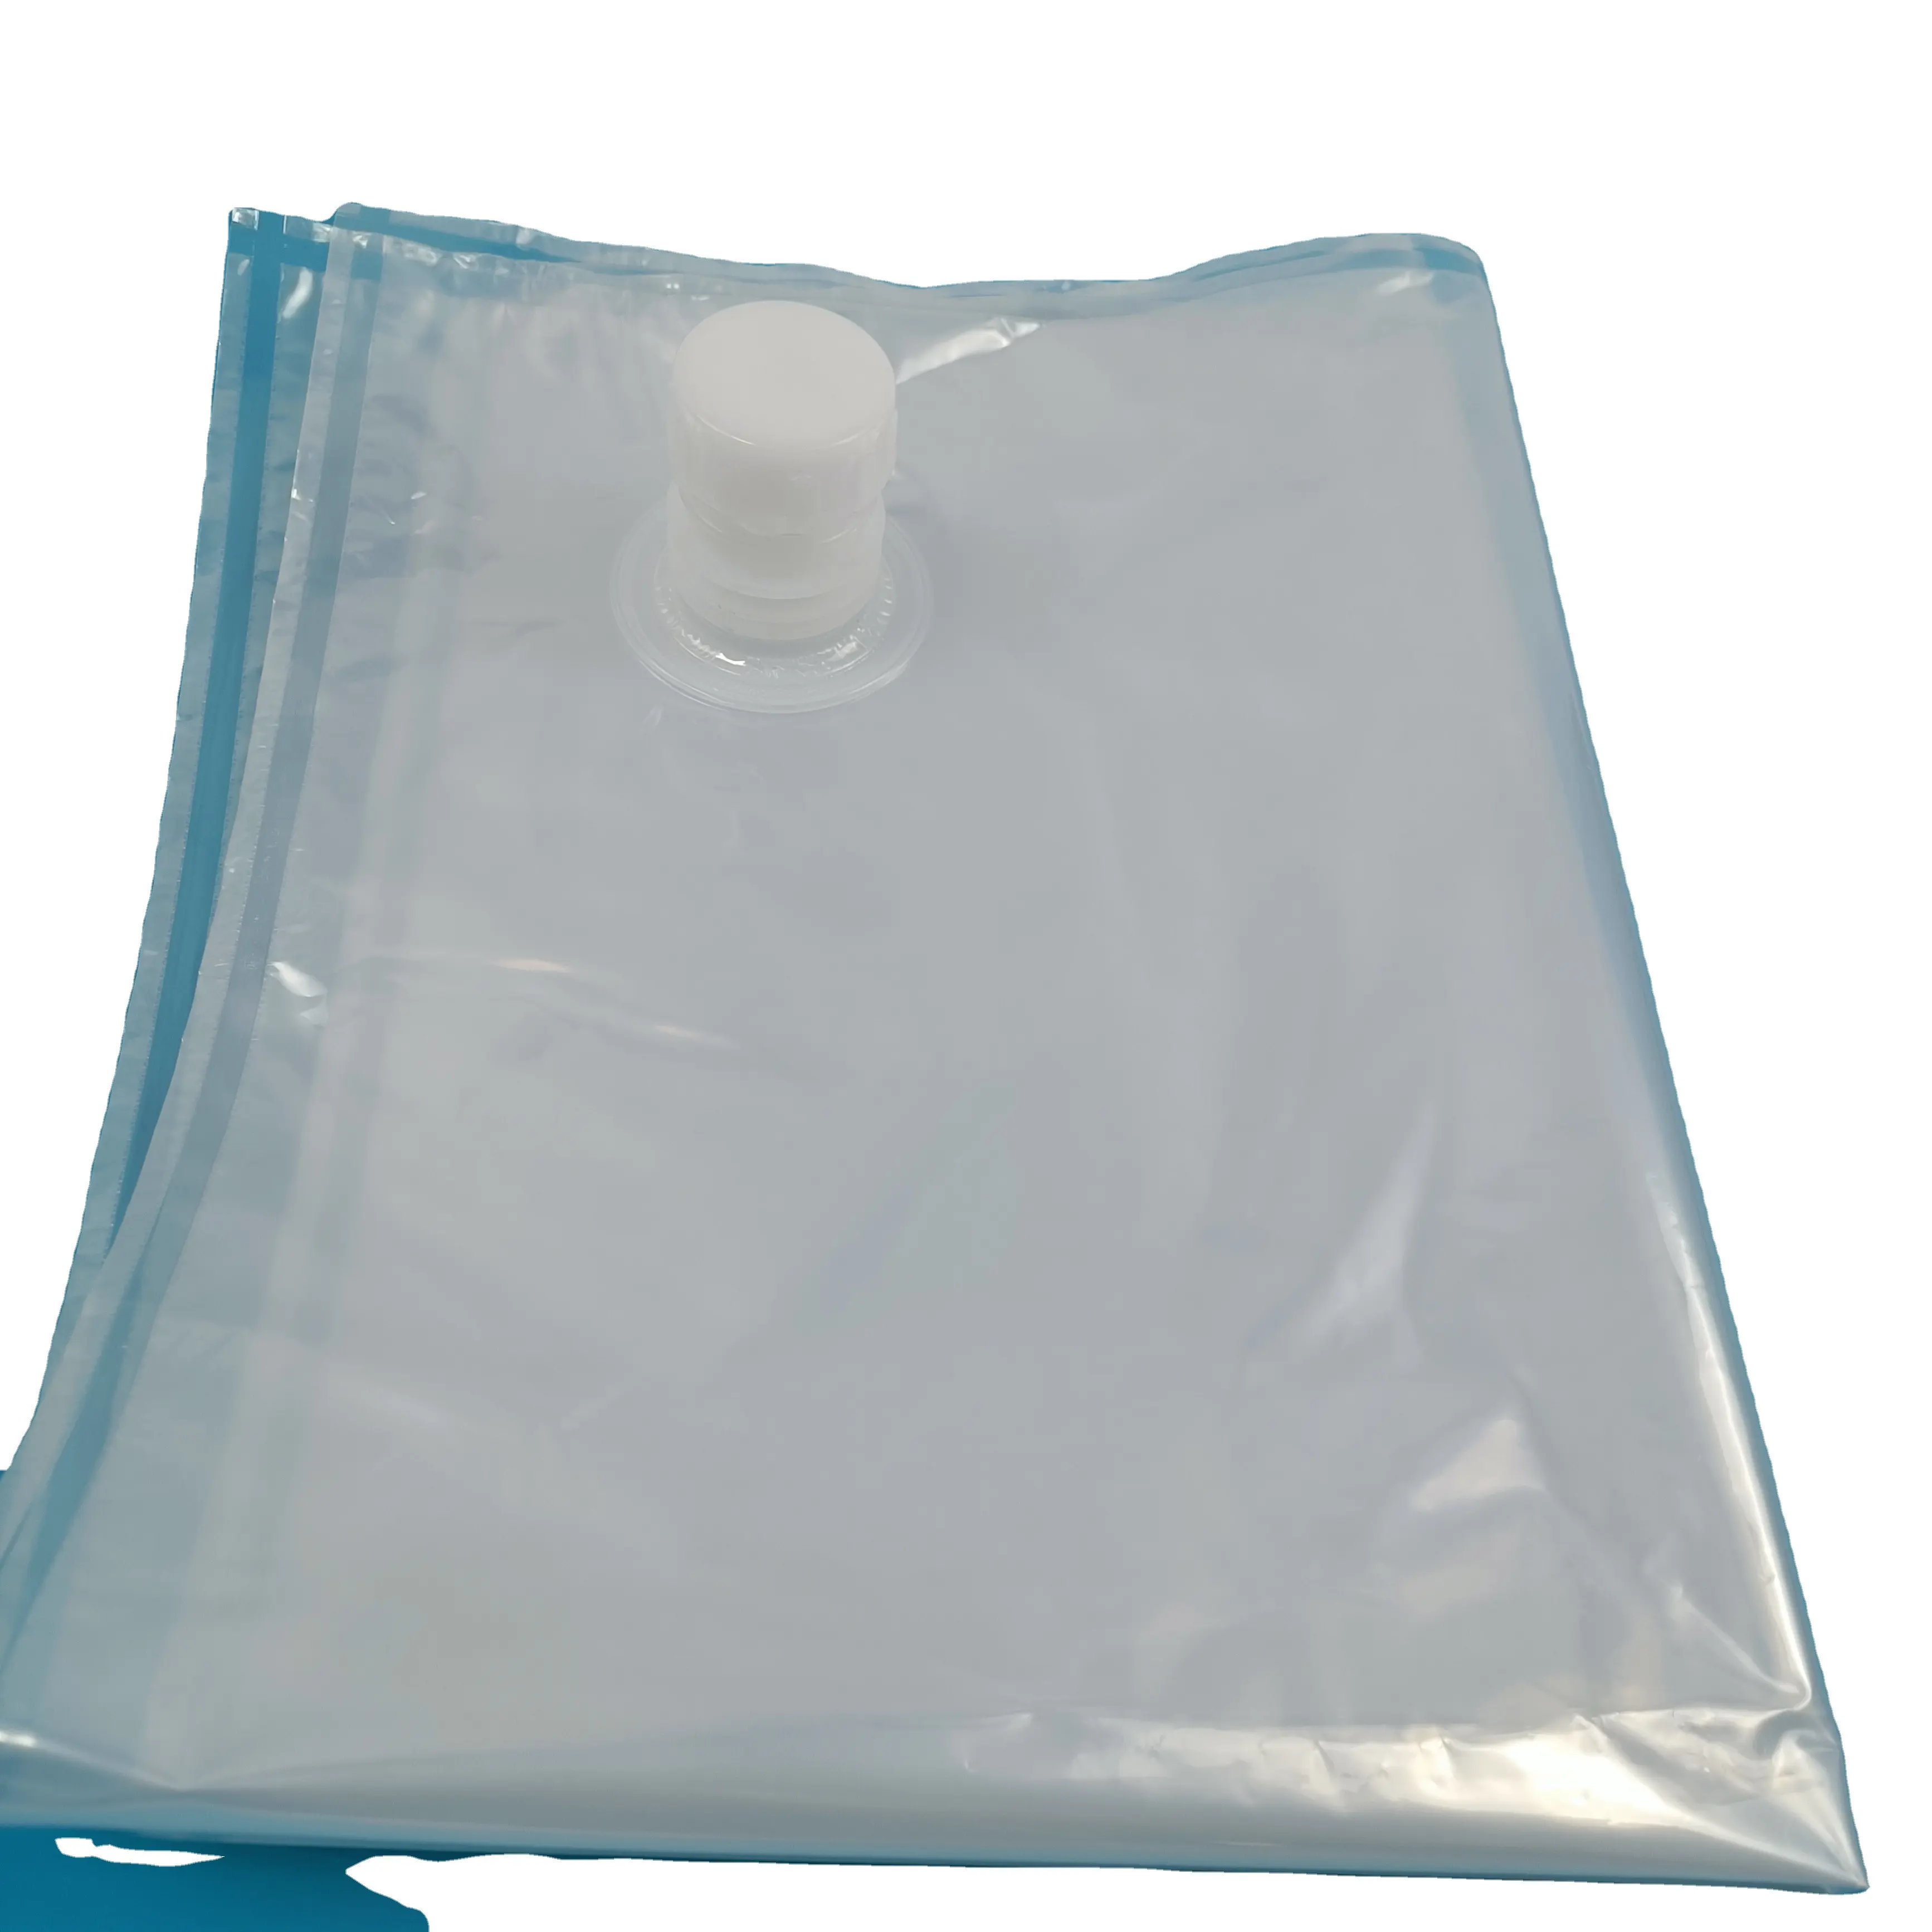 과일 주스 액체 식품 포장용 밸브 탭이있는 6 갤런 투명 나일론 PE 비닐 봉투